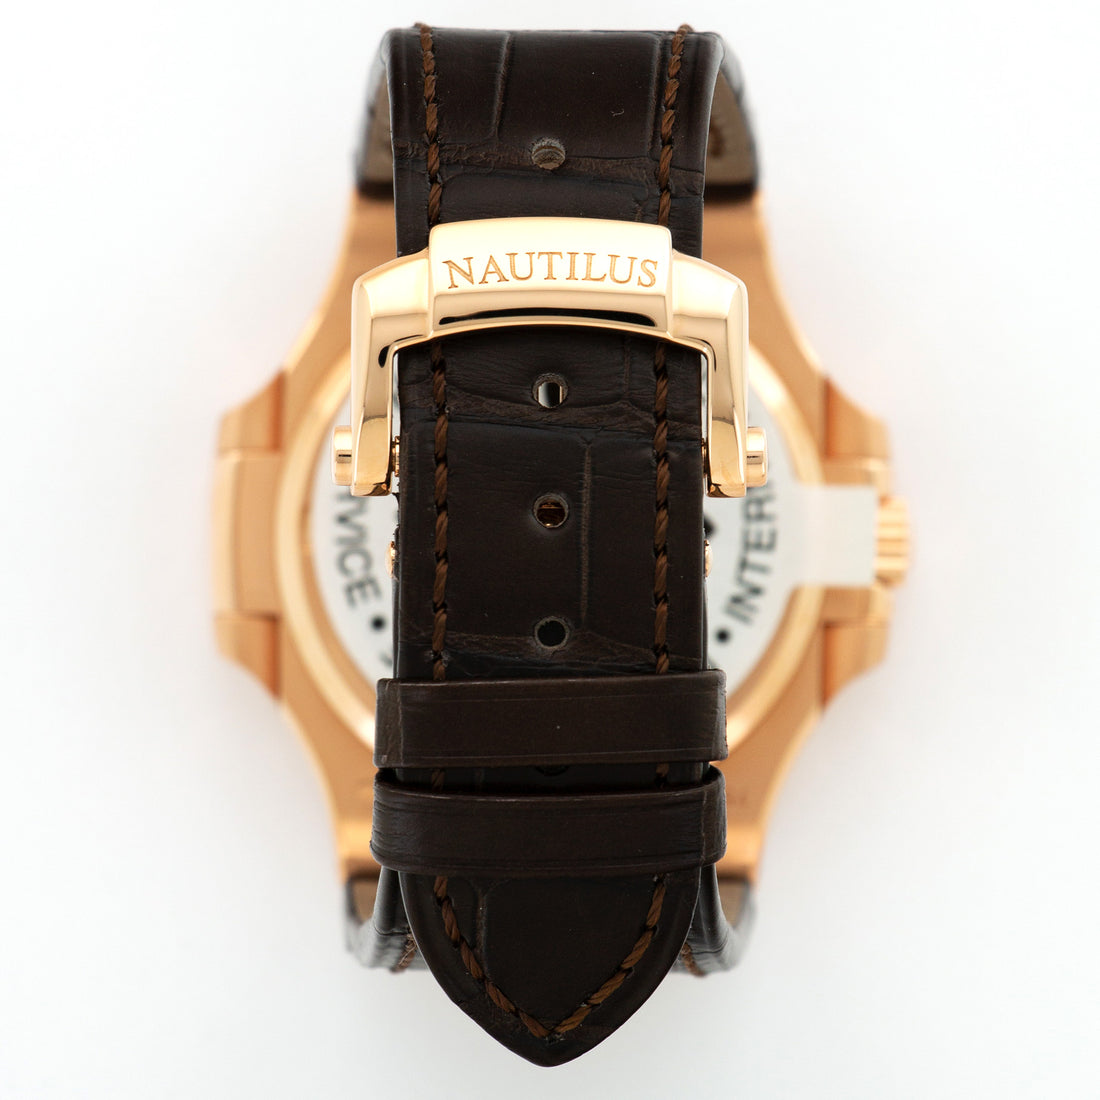 Patek Philippe Rose Gold Nautilus Watch Ref. 5711